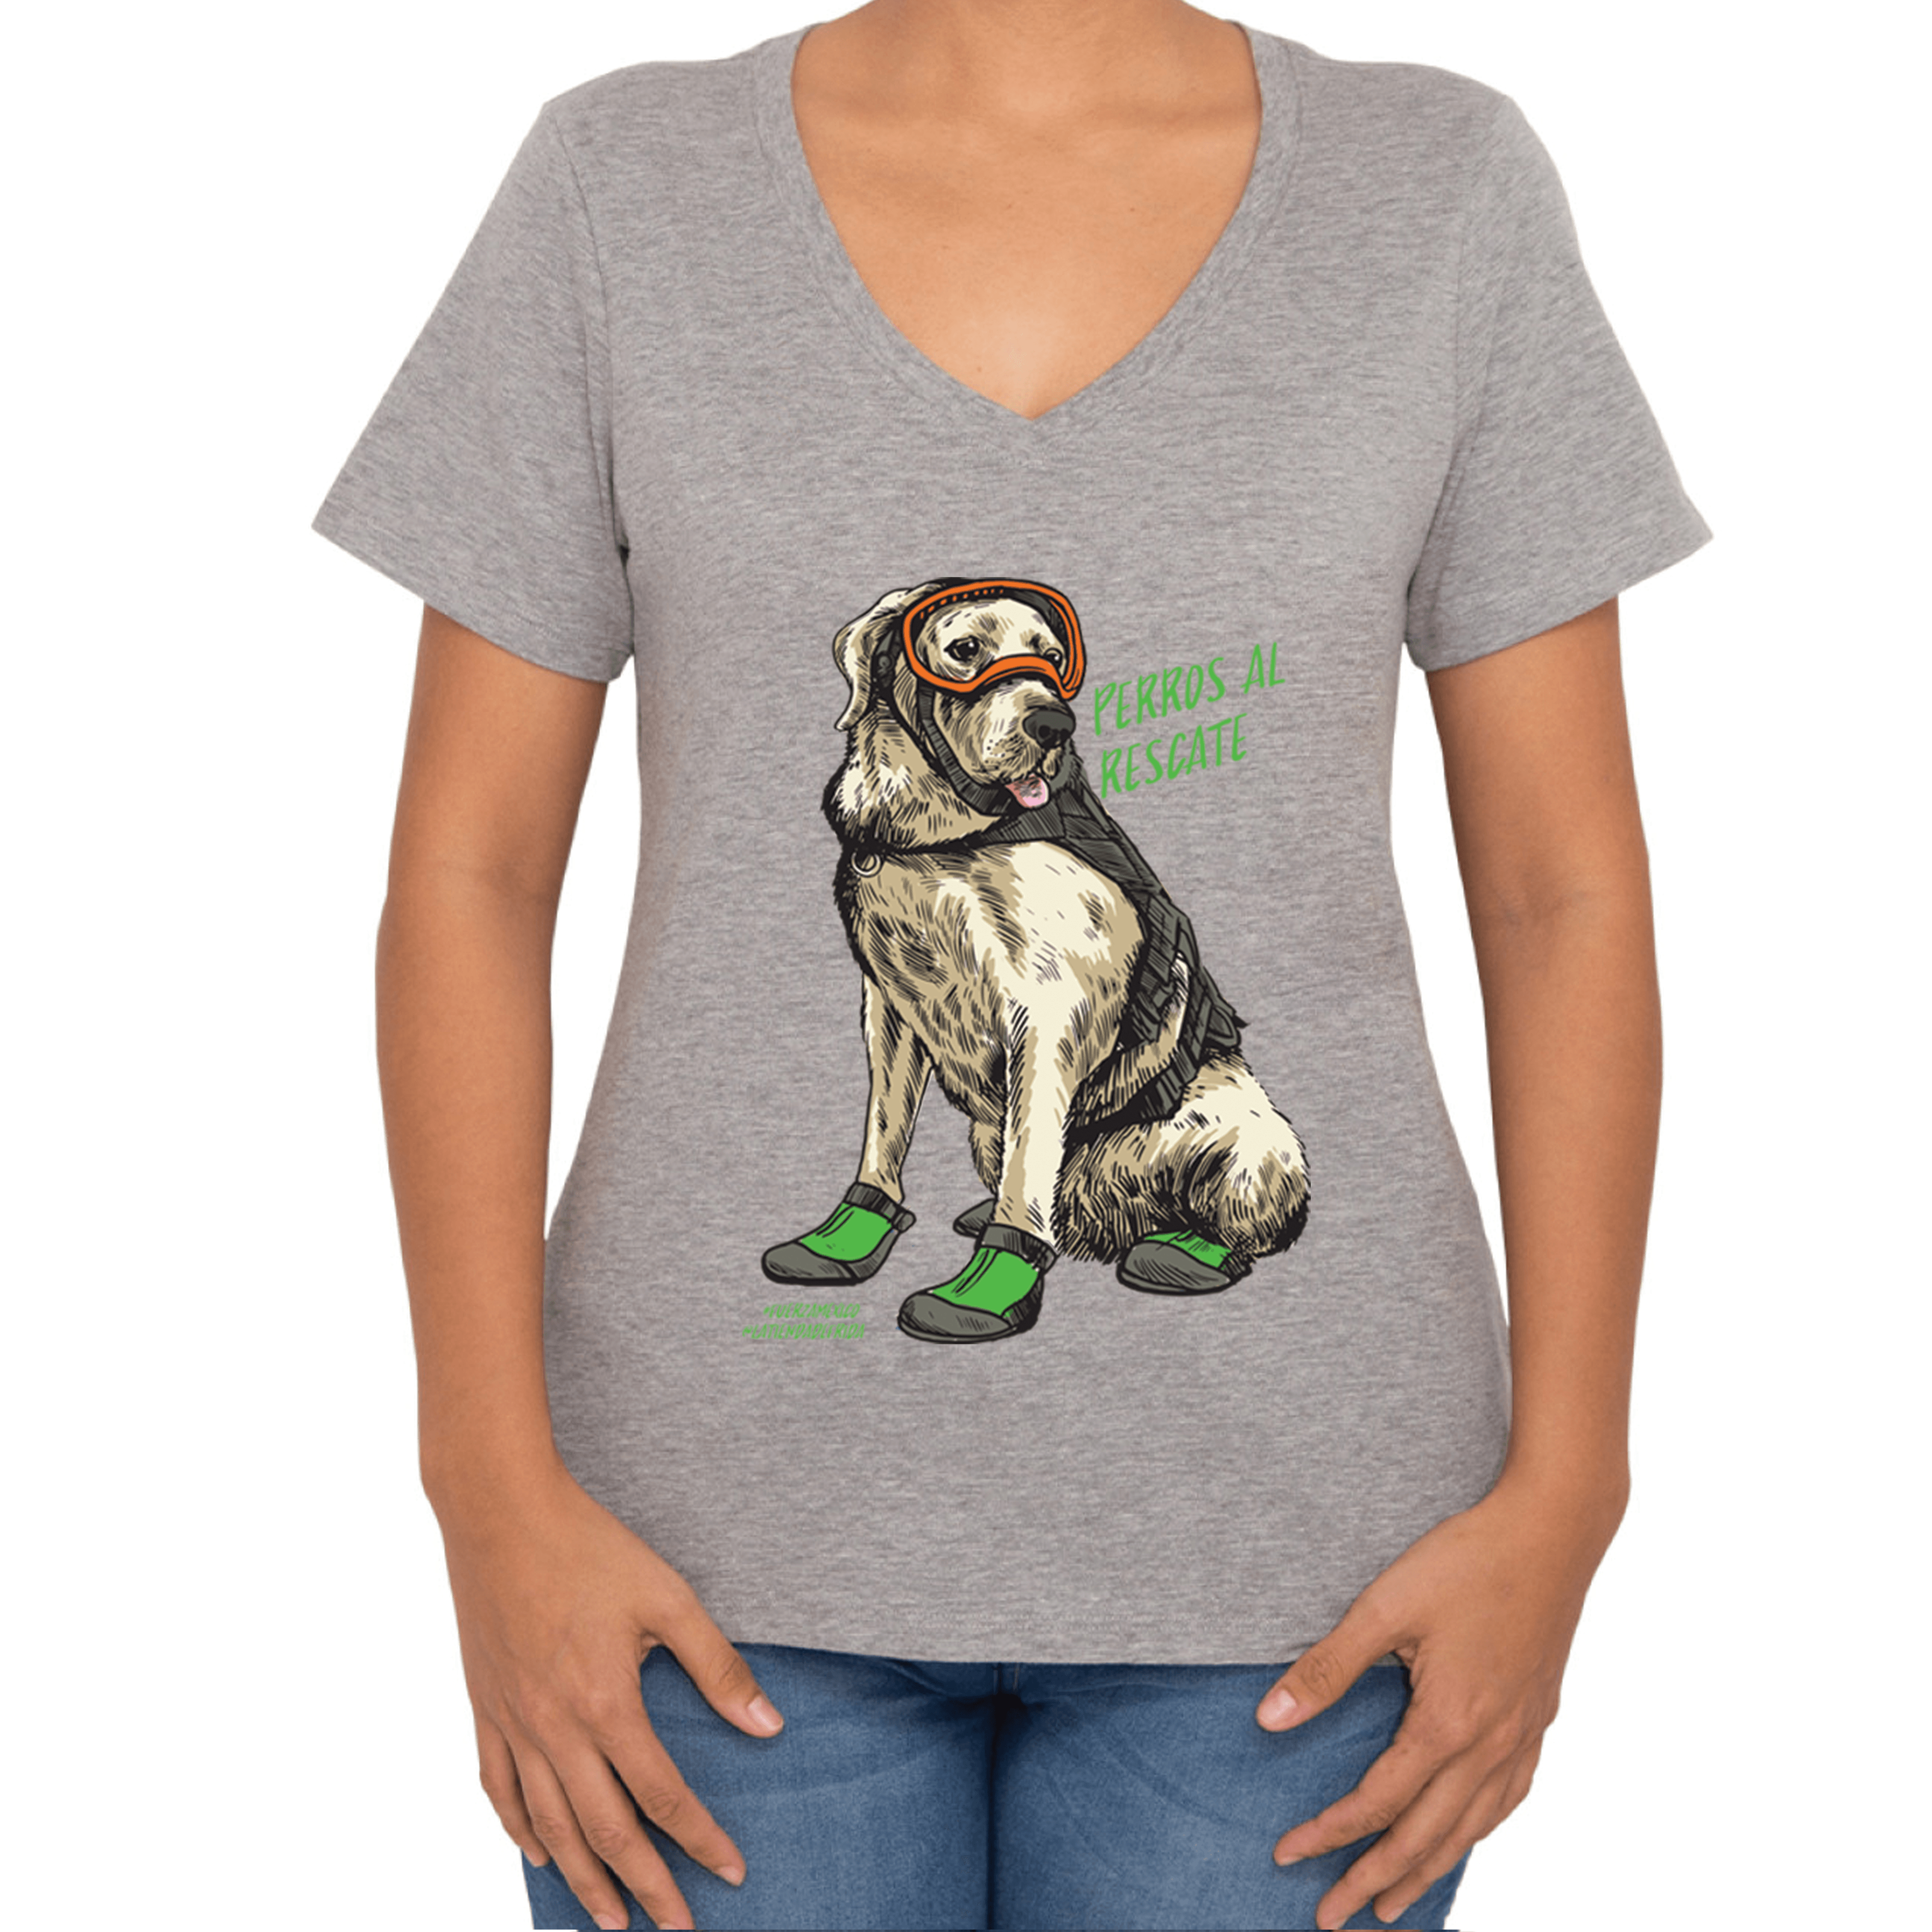 Camiseta Dama para Perros al Rescate: Frida la Labrador en Gris